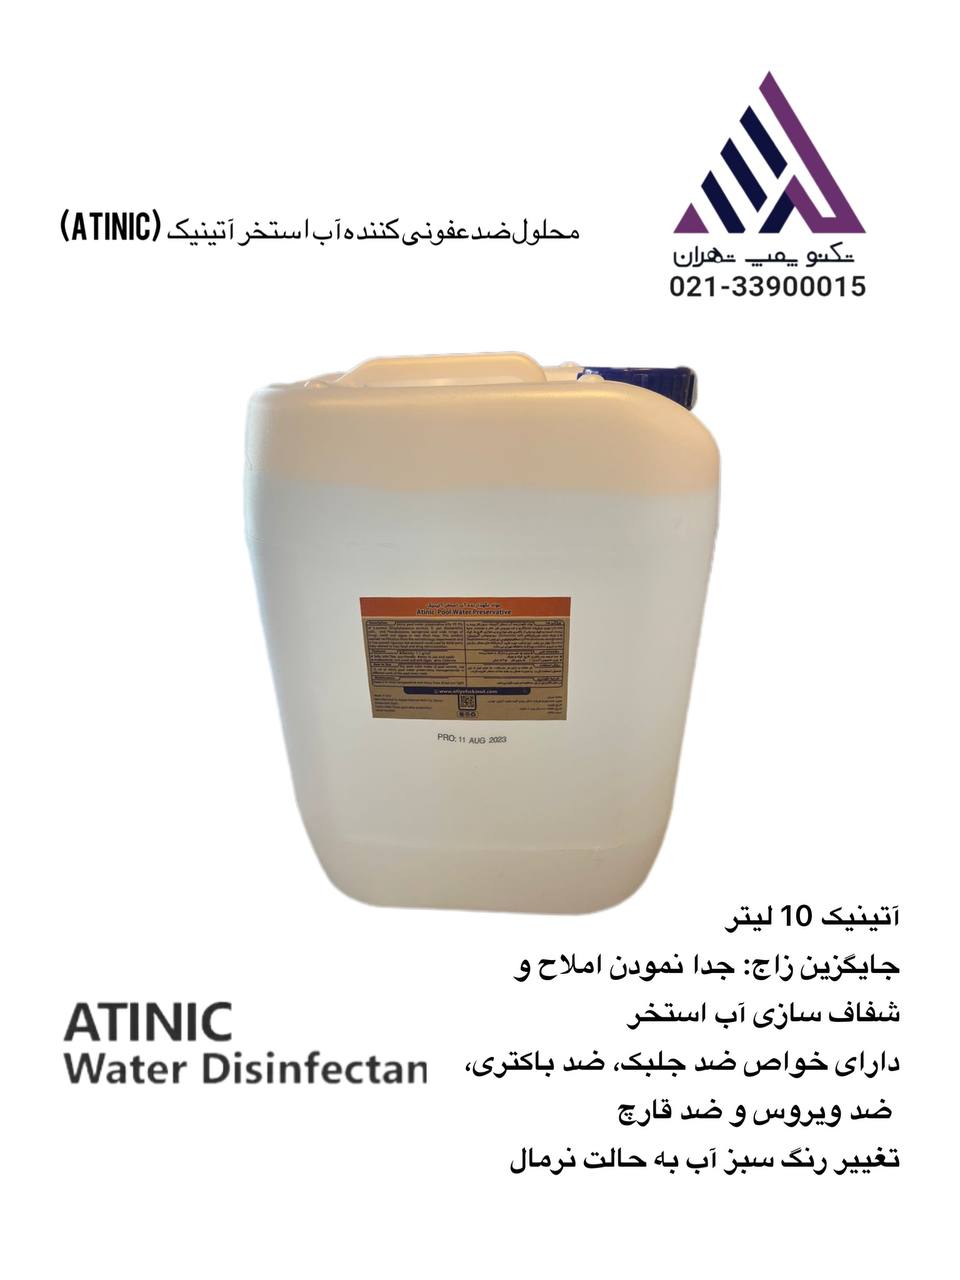 محلول ضدعفونی کننده آب استخر آتینیک  10 لیتر (Atinic)